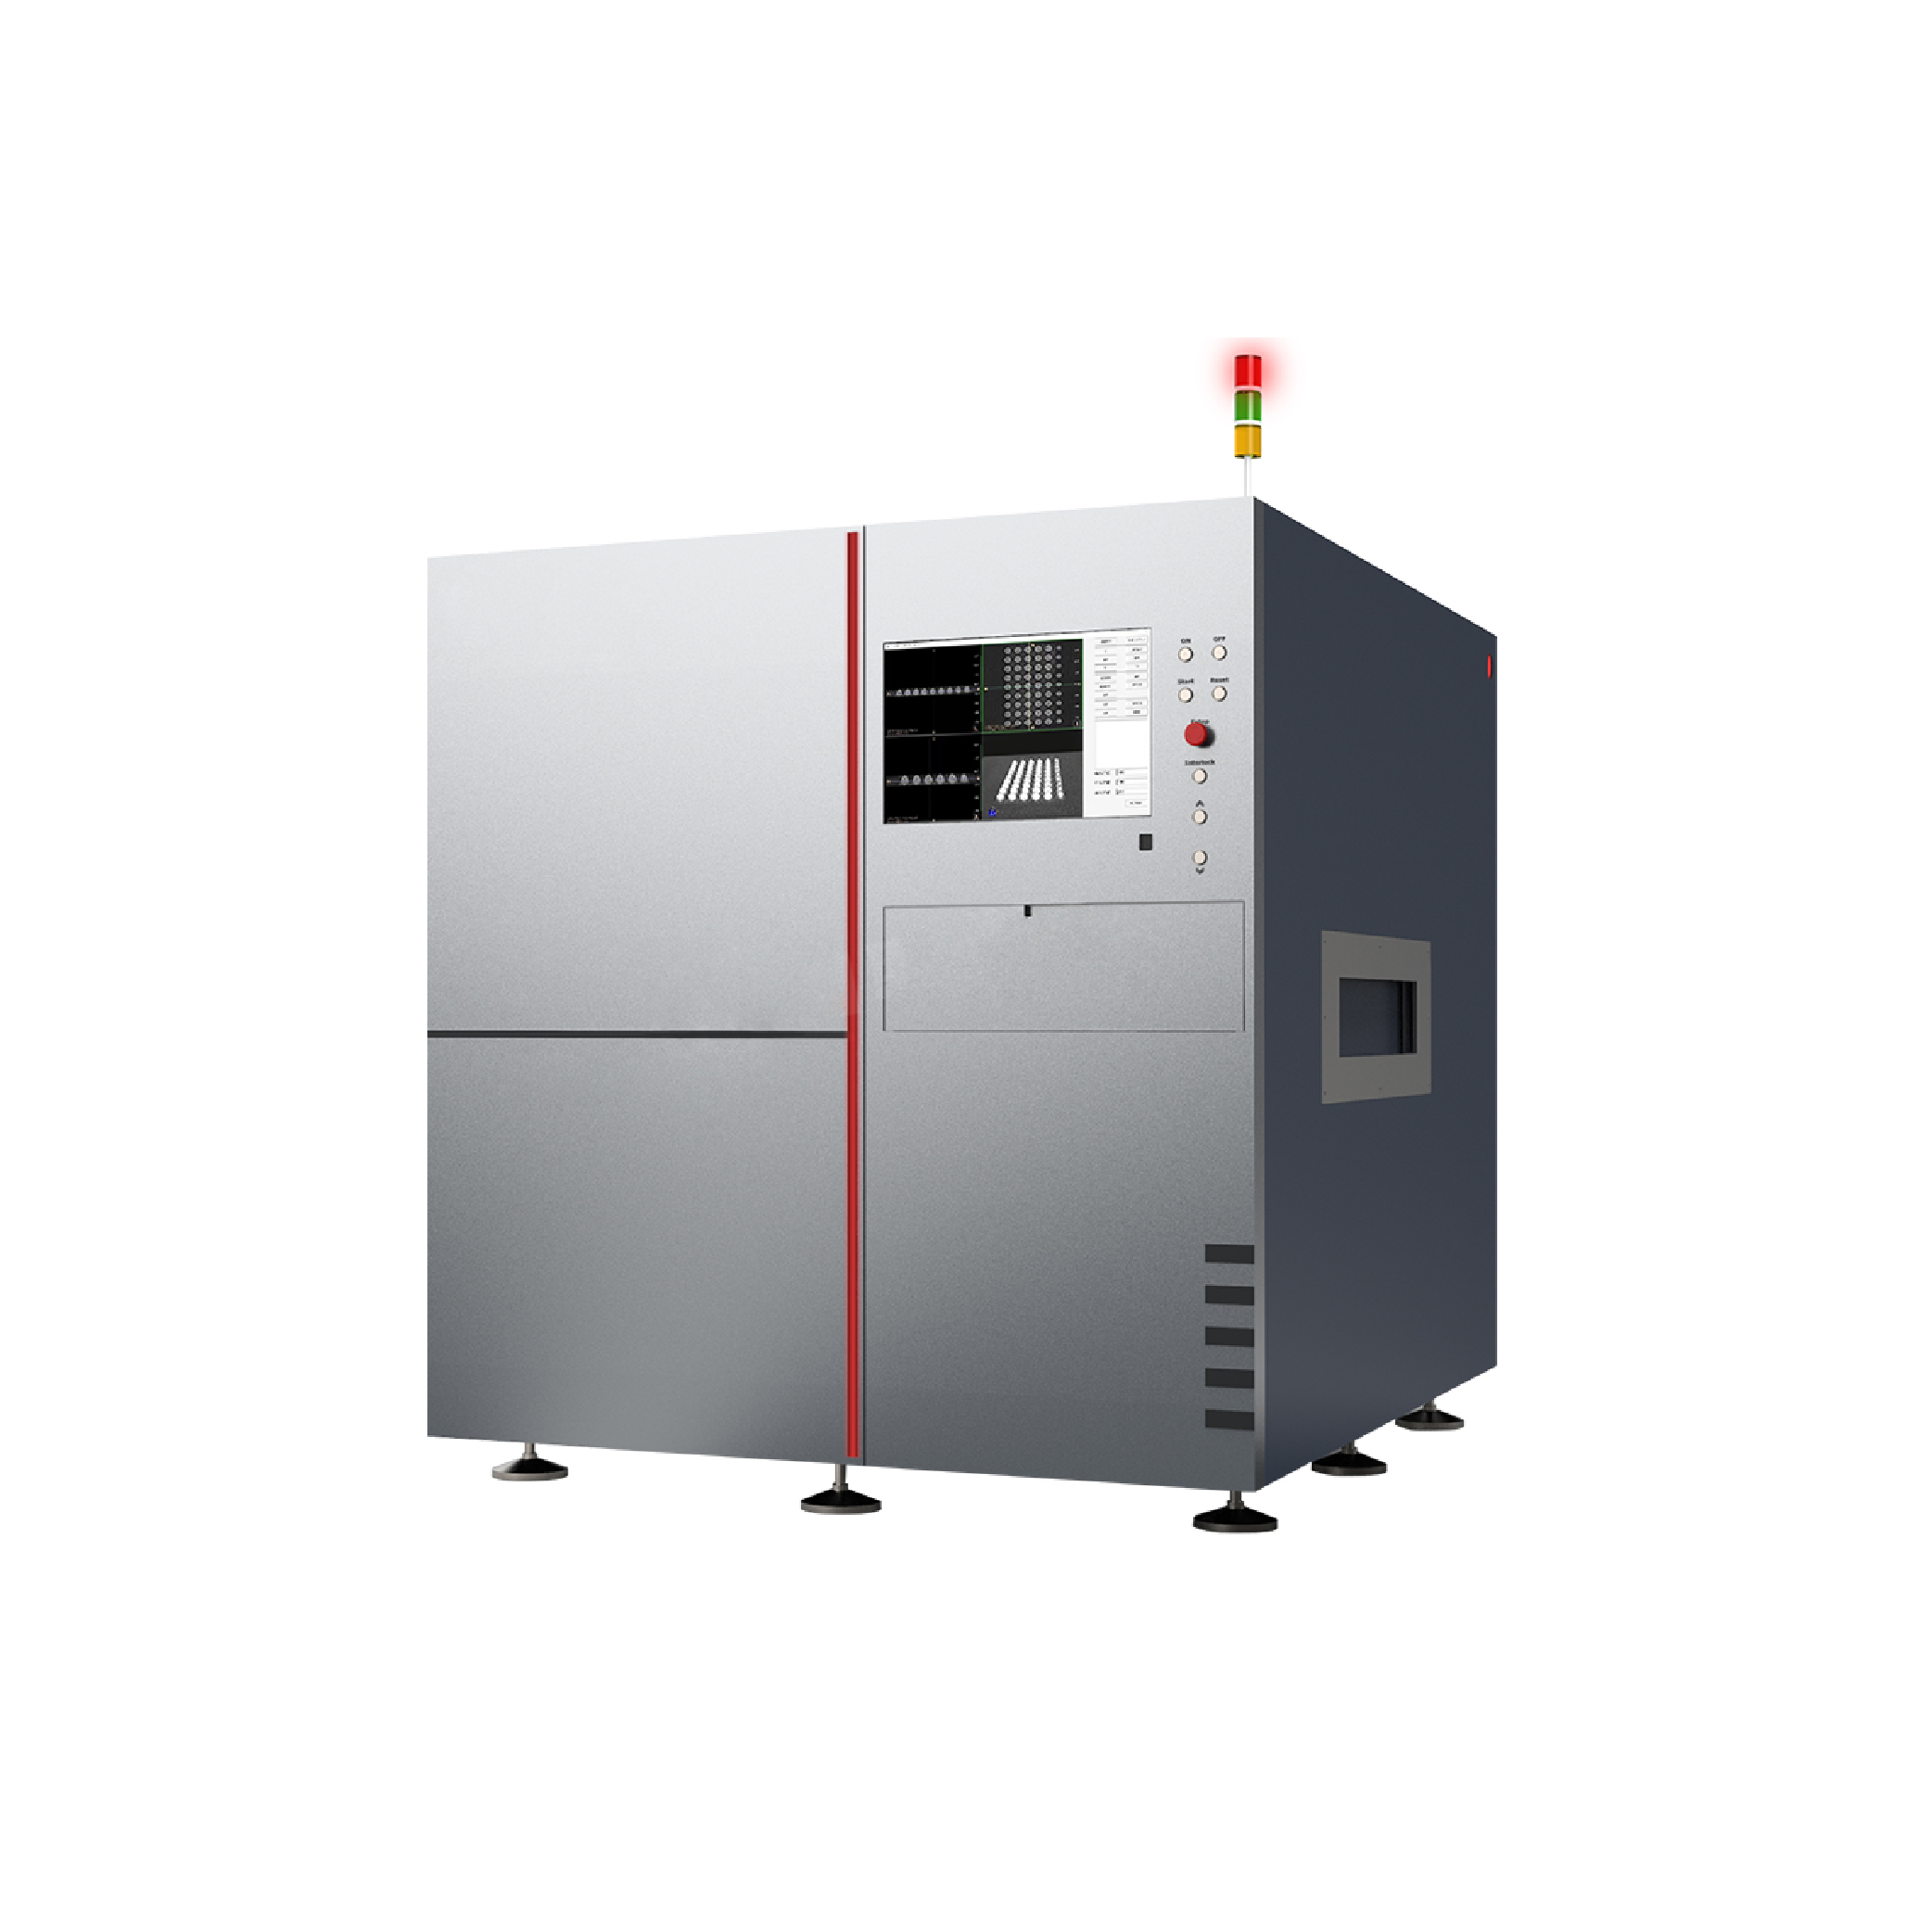 I.C.T-9200 |Machine automatisée en ligne d'équipement d'inspection à rayons X PCB SMT